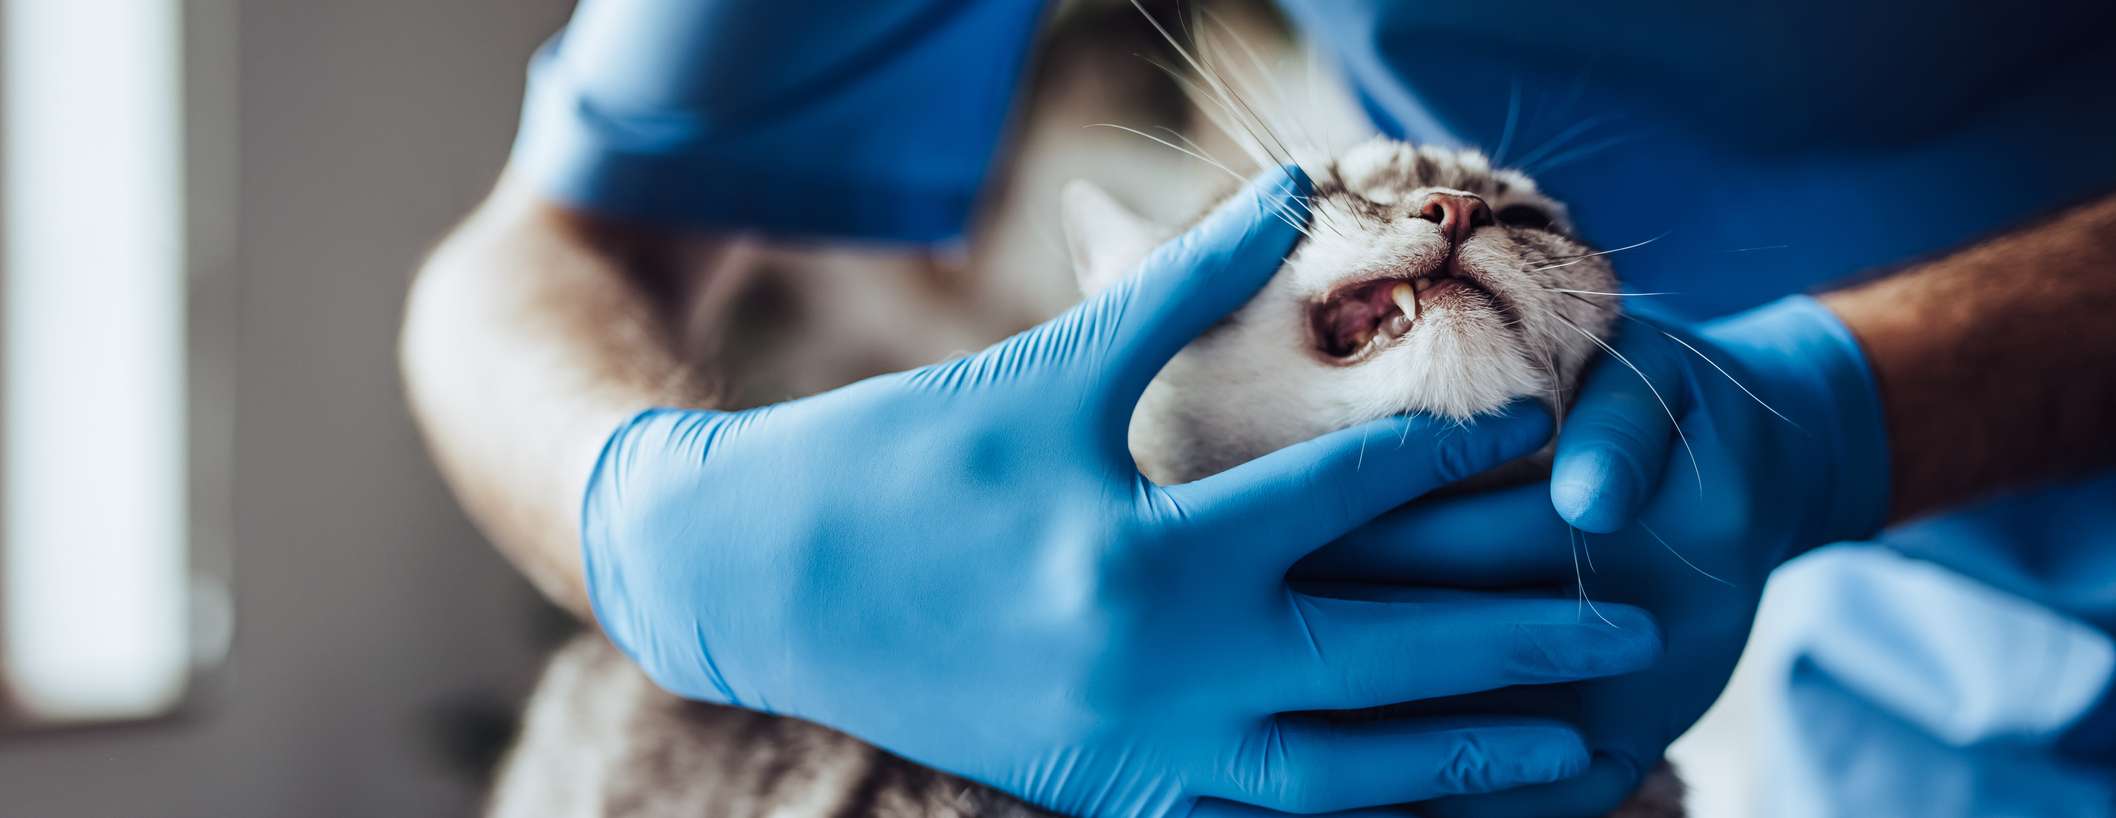 Katze in Behandlung beim Tierarzt